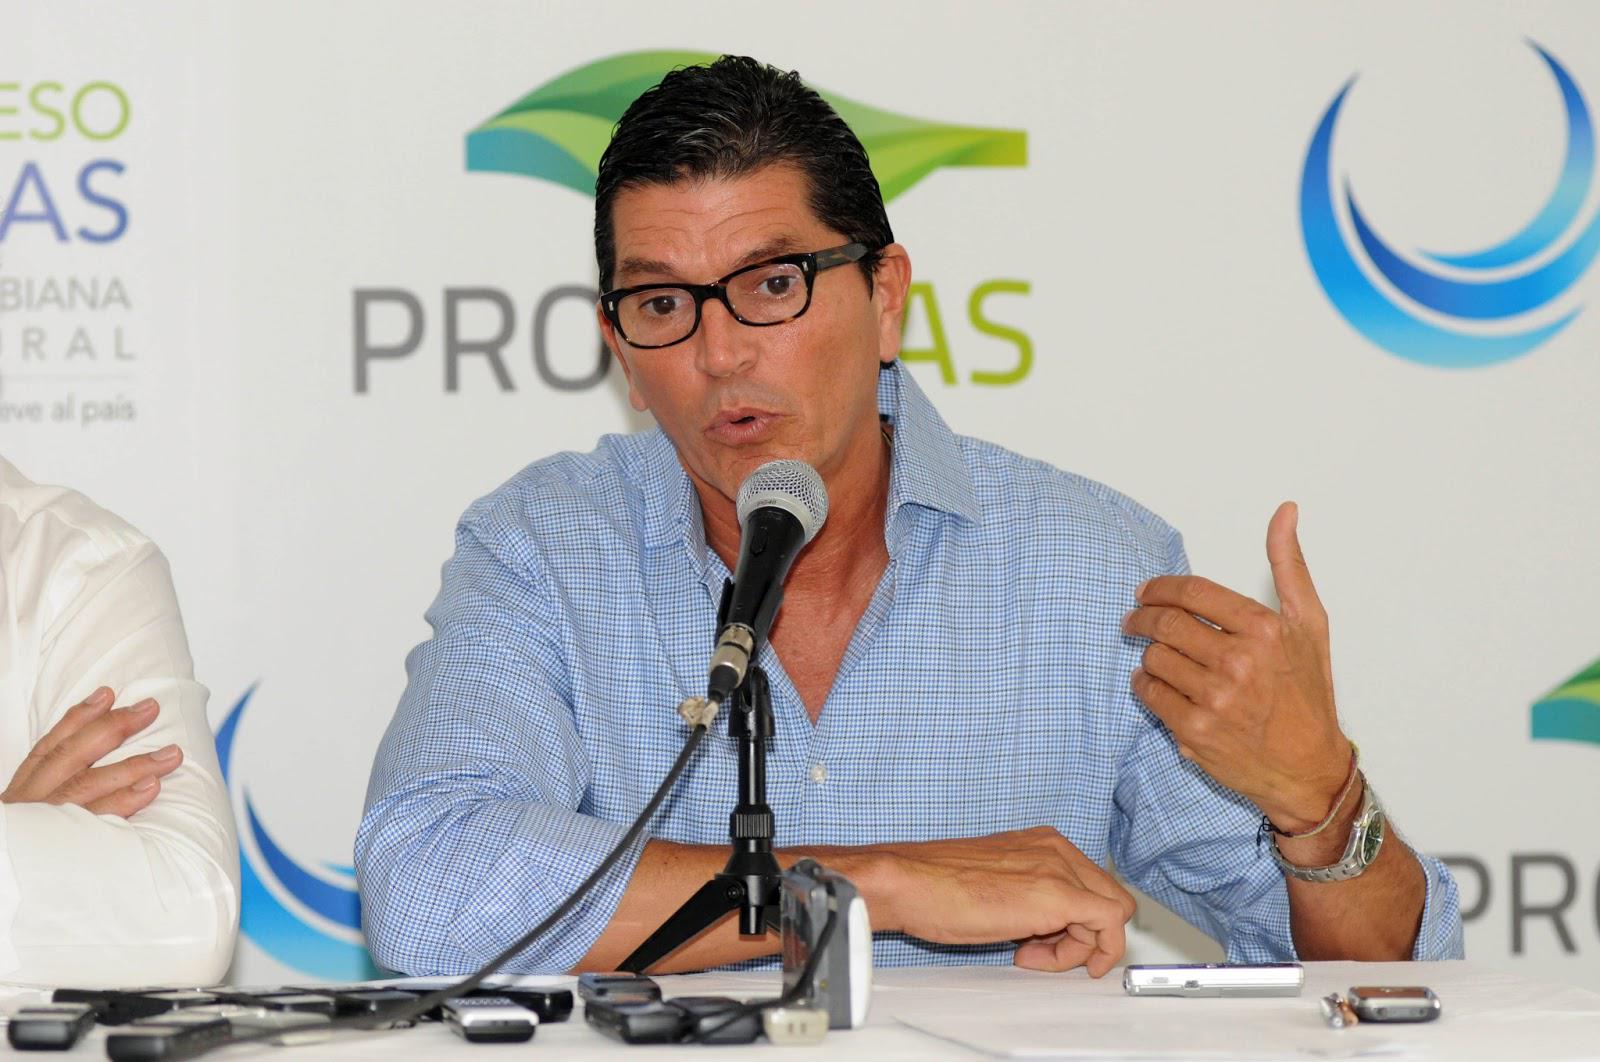 El presidente de Promigas asegura que la decisión final vendrá tras un detallado análisis financiero de Electricaribe / Foto: Promigas